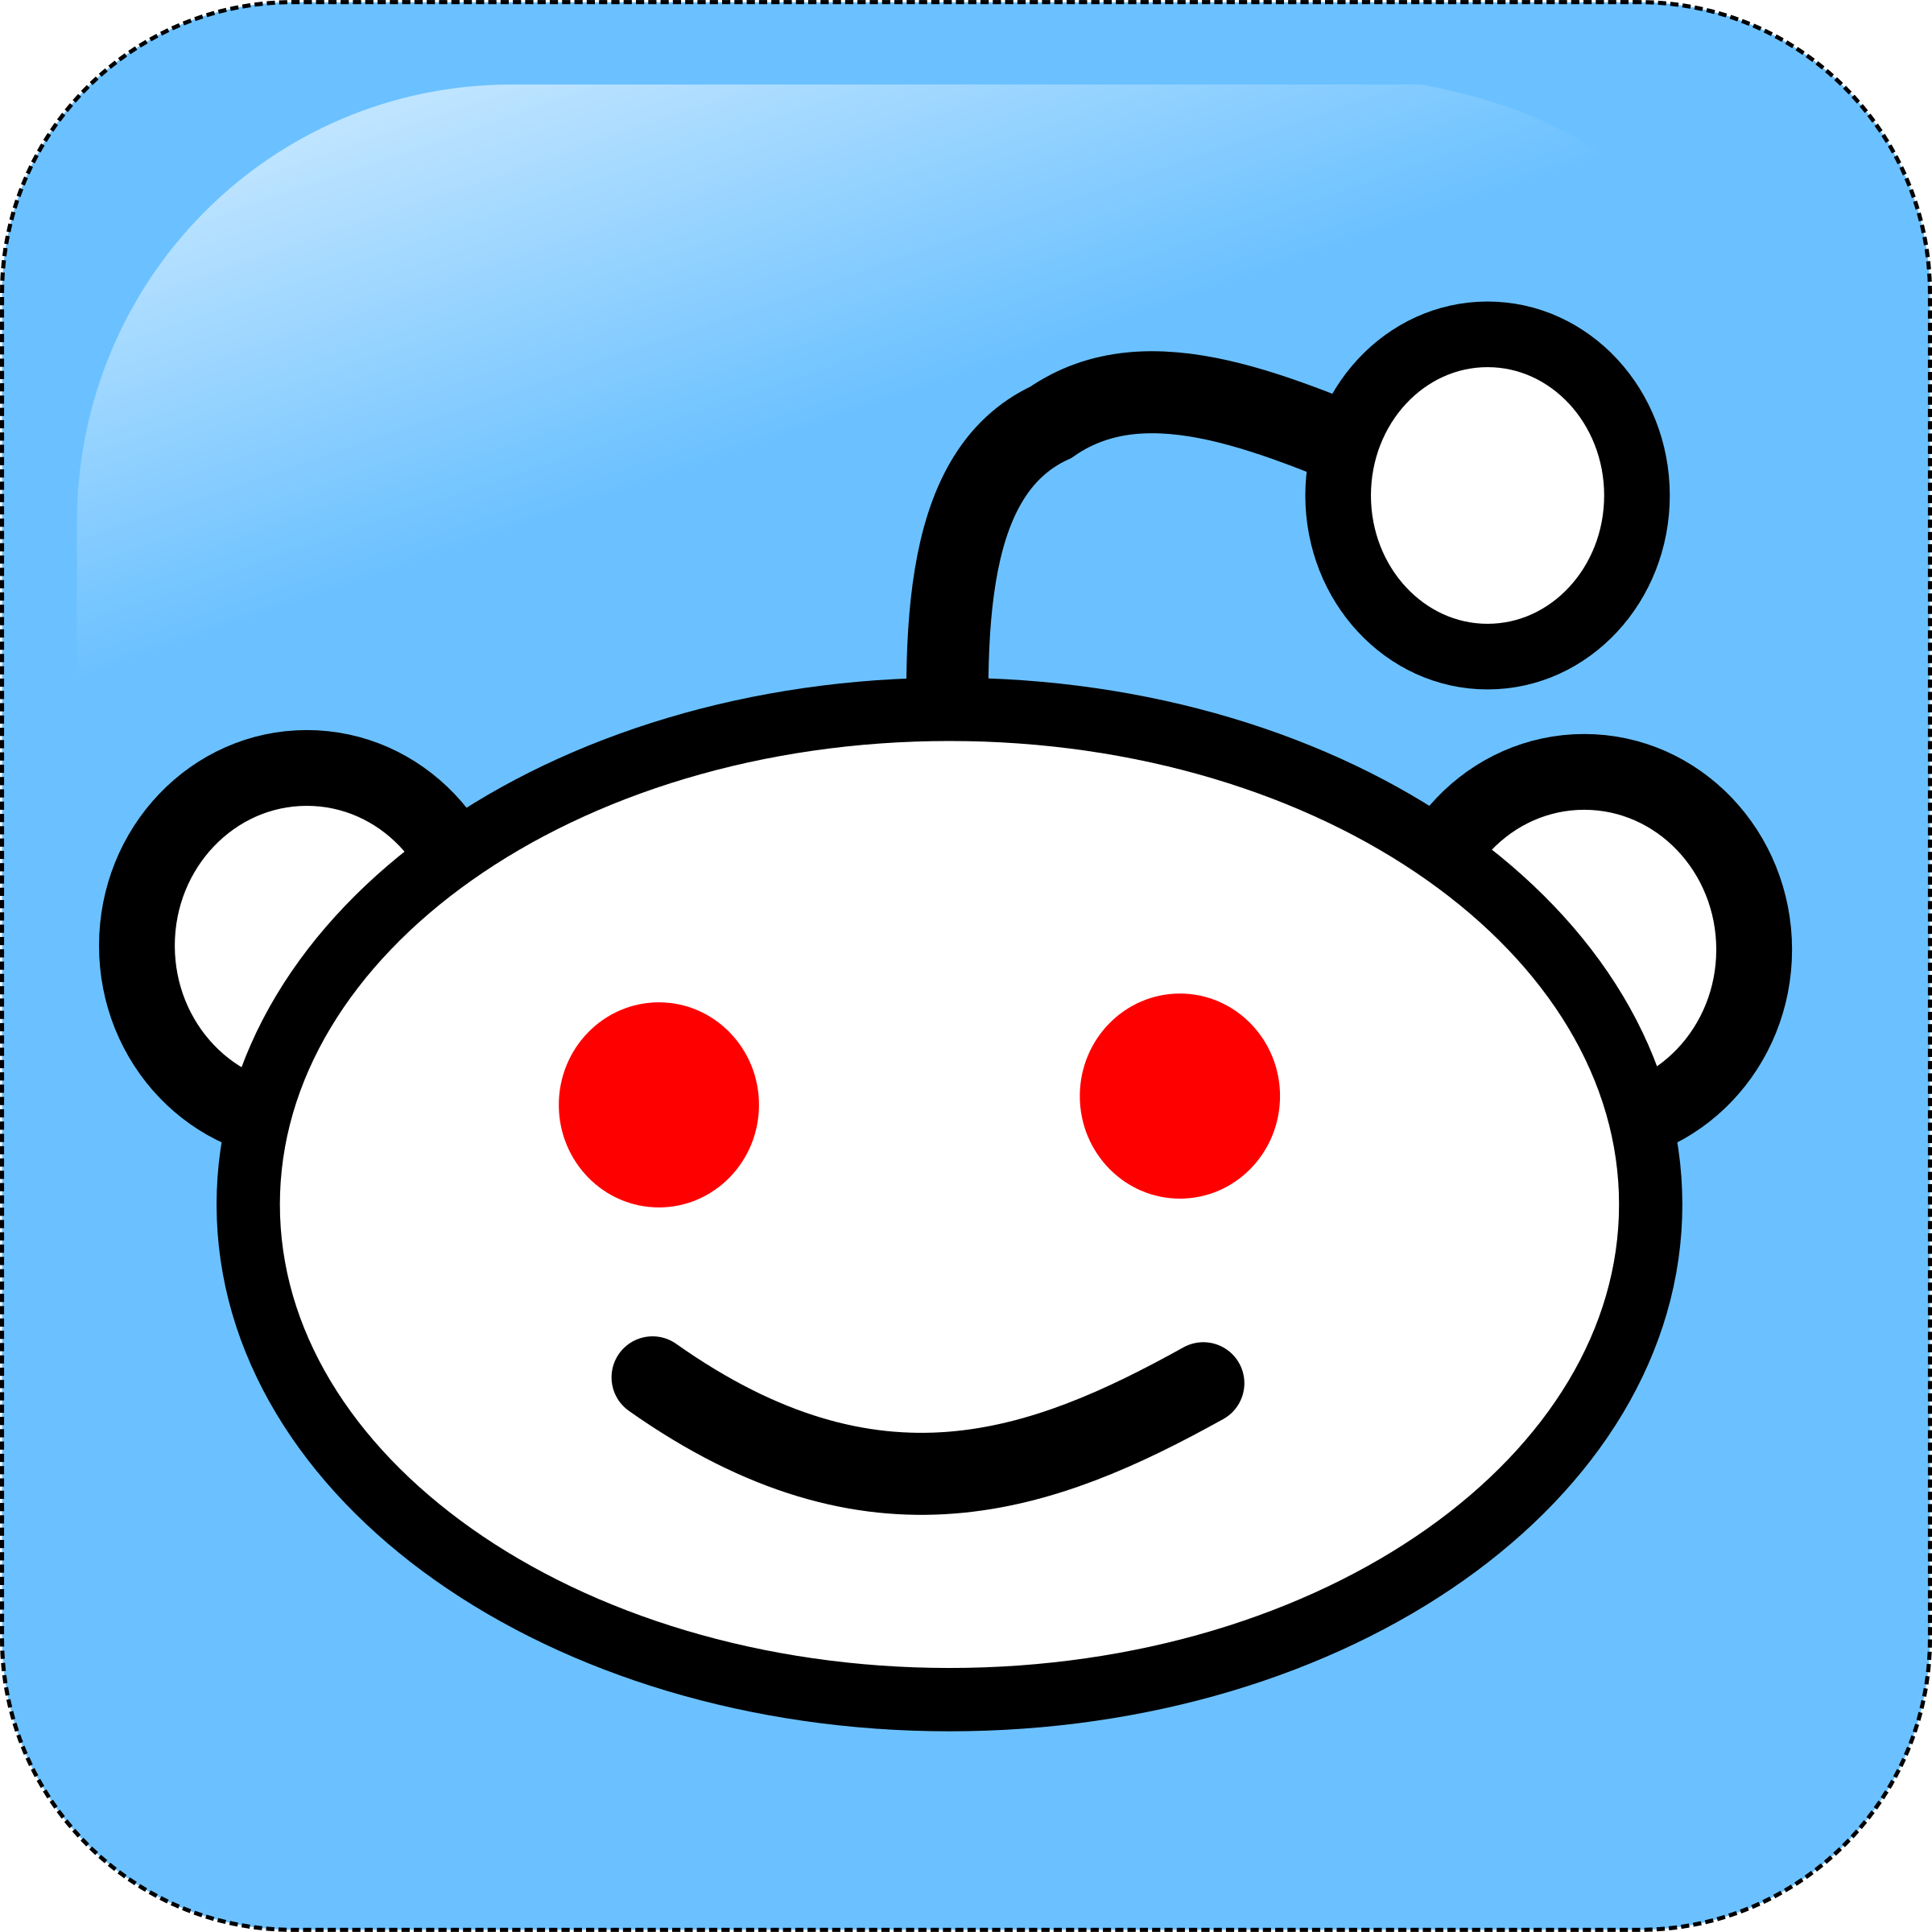 Reddit.com Logo - Reddit Logo PNG Transparent & SVG Vector - Freebie Supply